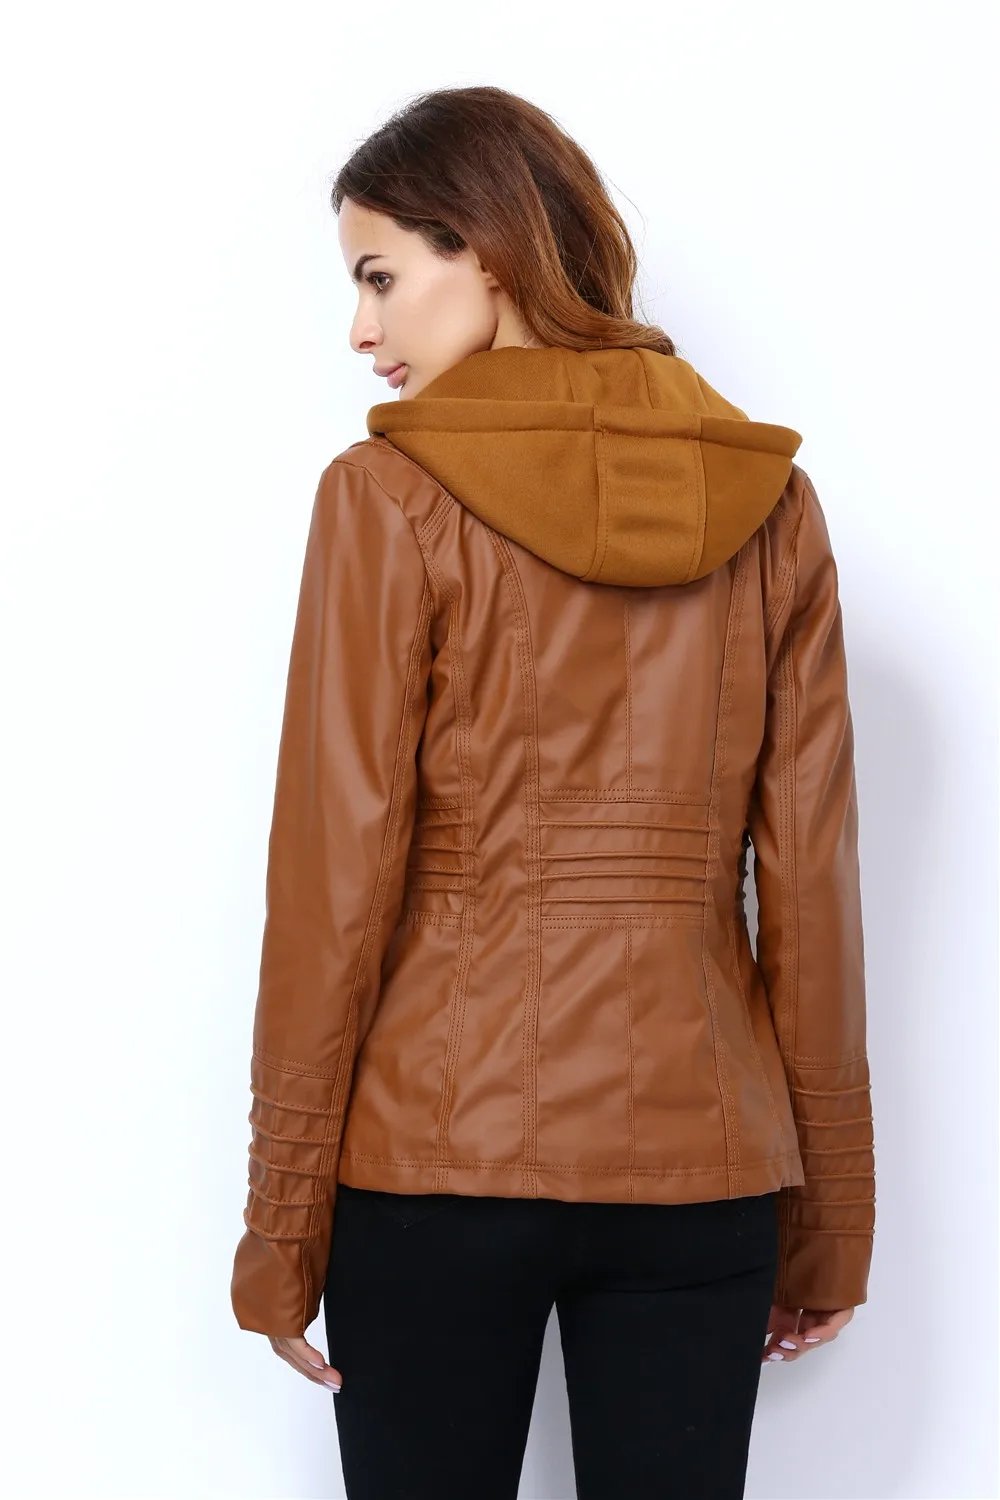 Базовое пальто из искусственной кожи на молнии, шапка, сезон осень-зима, женская одежда Casaco Feminino, верхняя одежда в стиле панк, мотоциклетная куртка